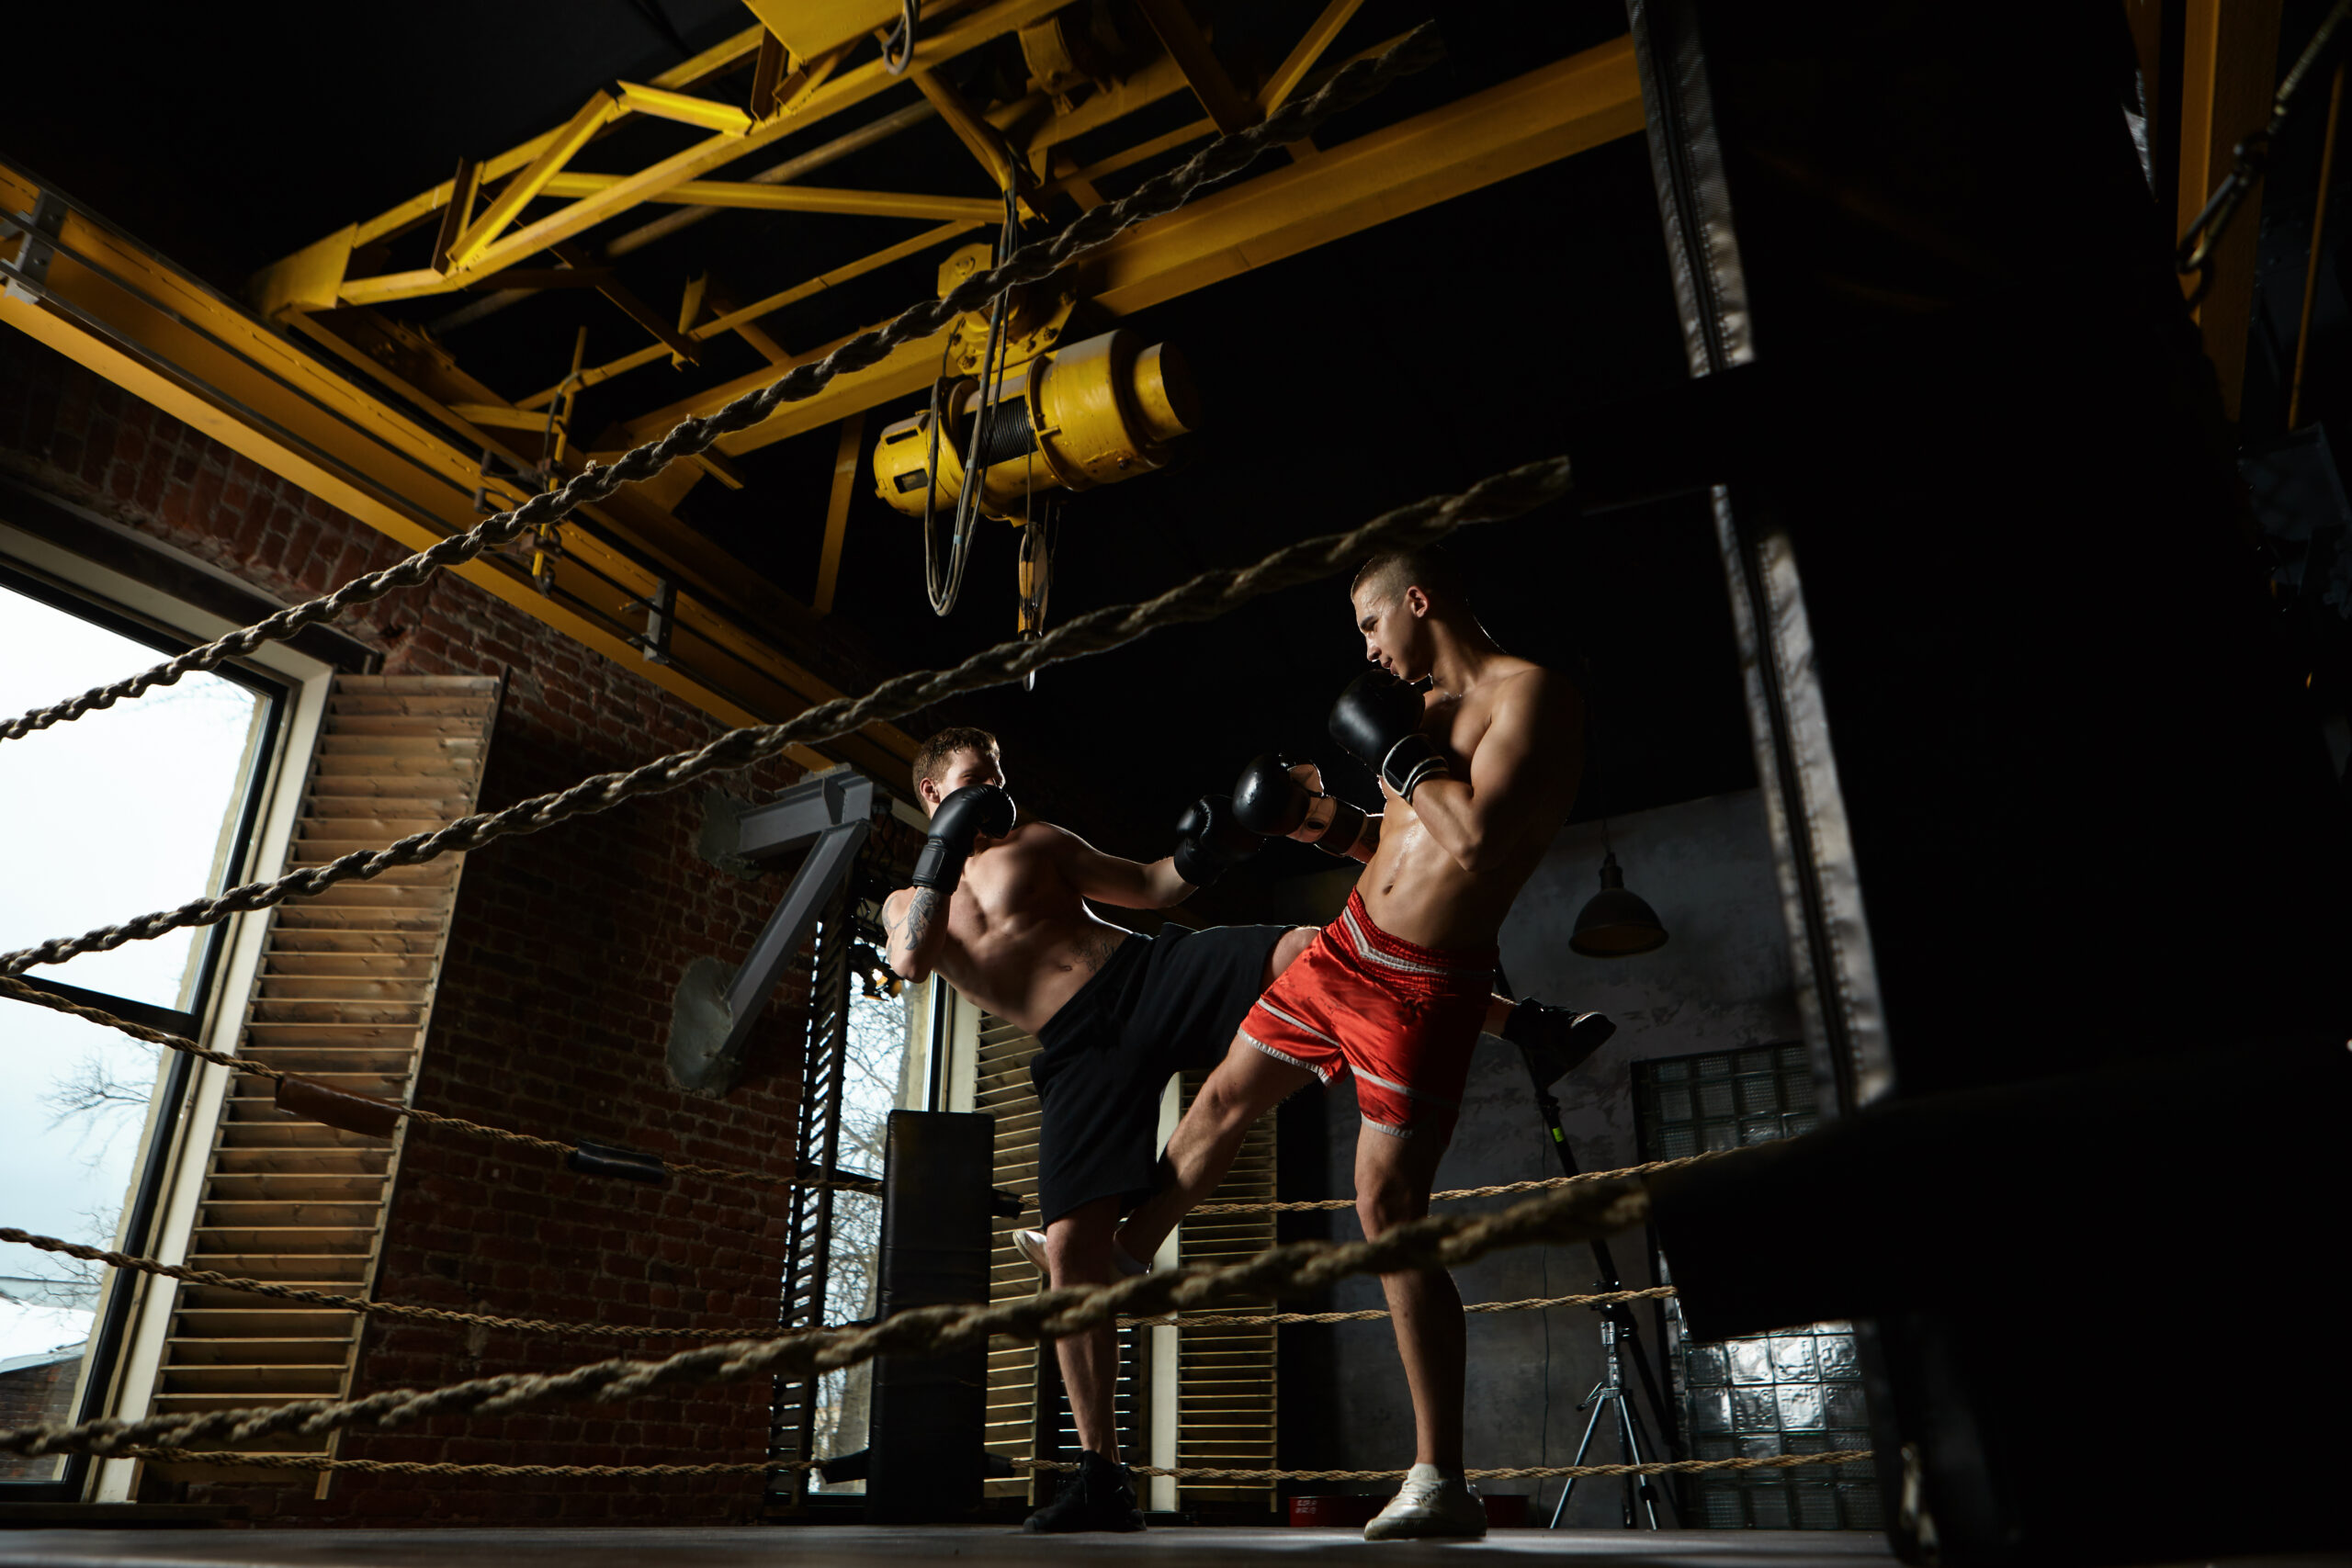 3º Curso Básico de Treinamento Desportivo e Técnico Funcional para Kickboxing será realizado em julho no Rio de Janeiro